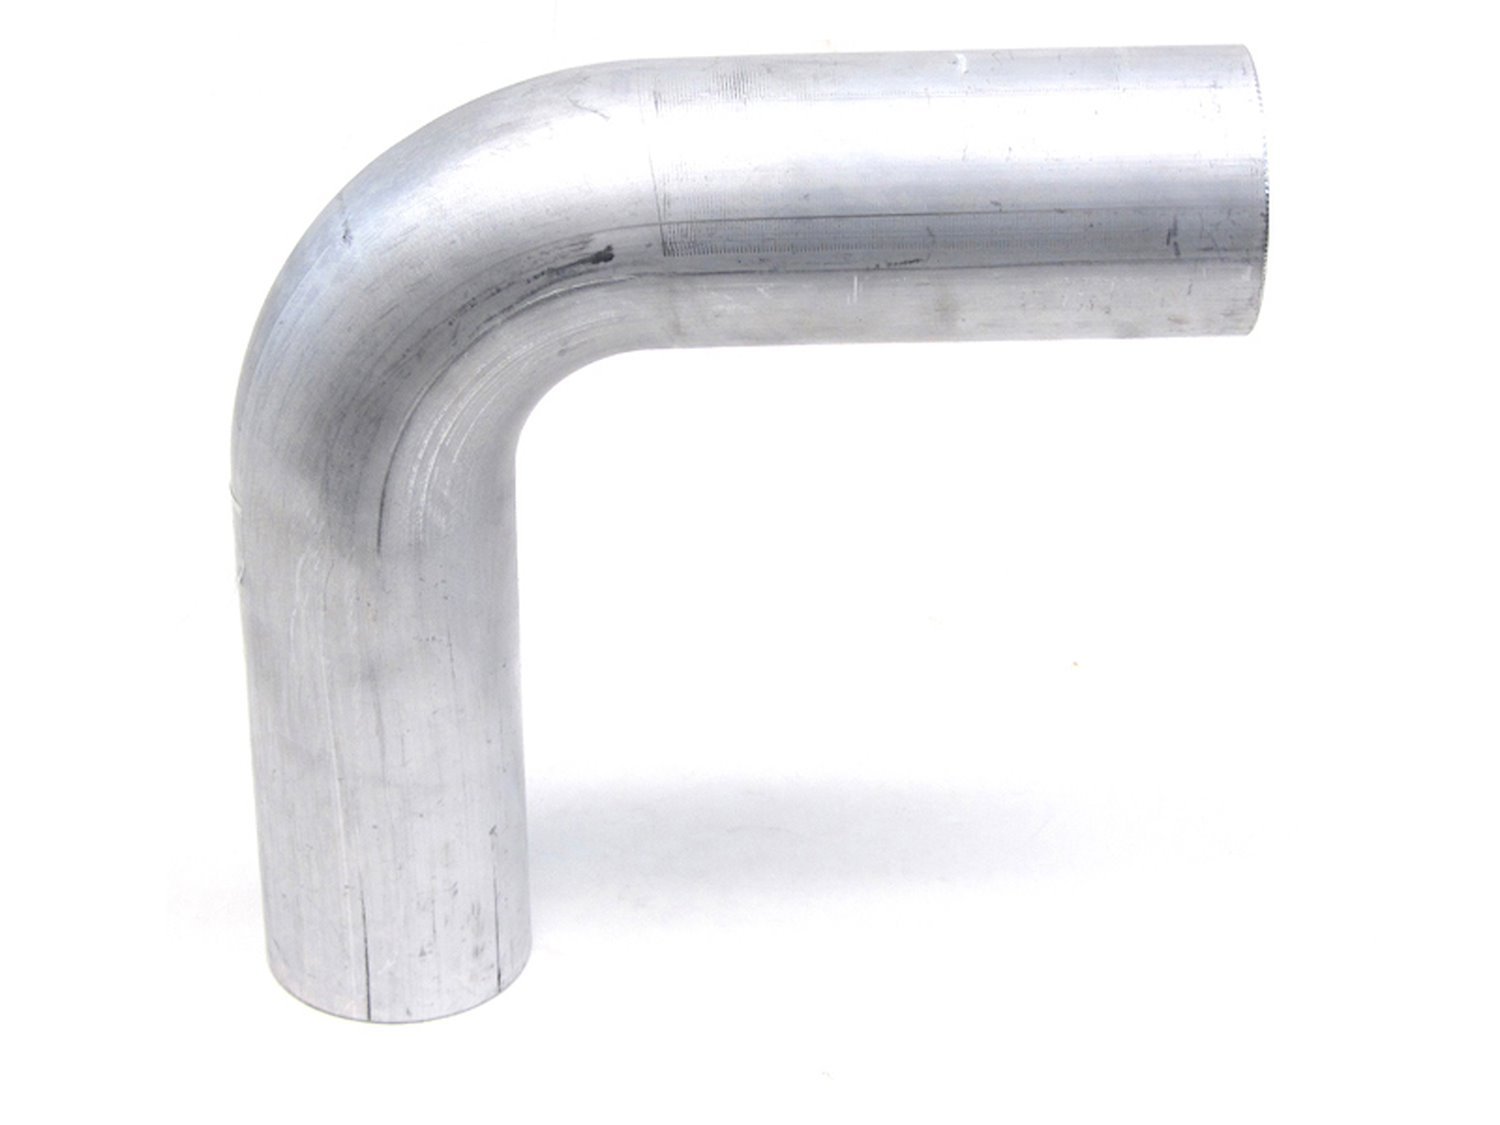 AT90-400-CLR-4 Aluminum Elbow Tube, 6061 Aluminum, 90-Degree Bend Elbow Tubing, 4 in. OD, Tight Radius, 4 in. CLR